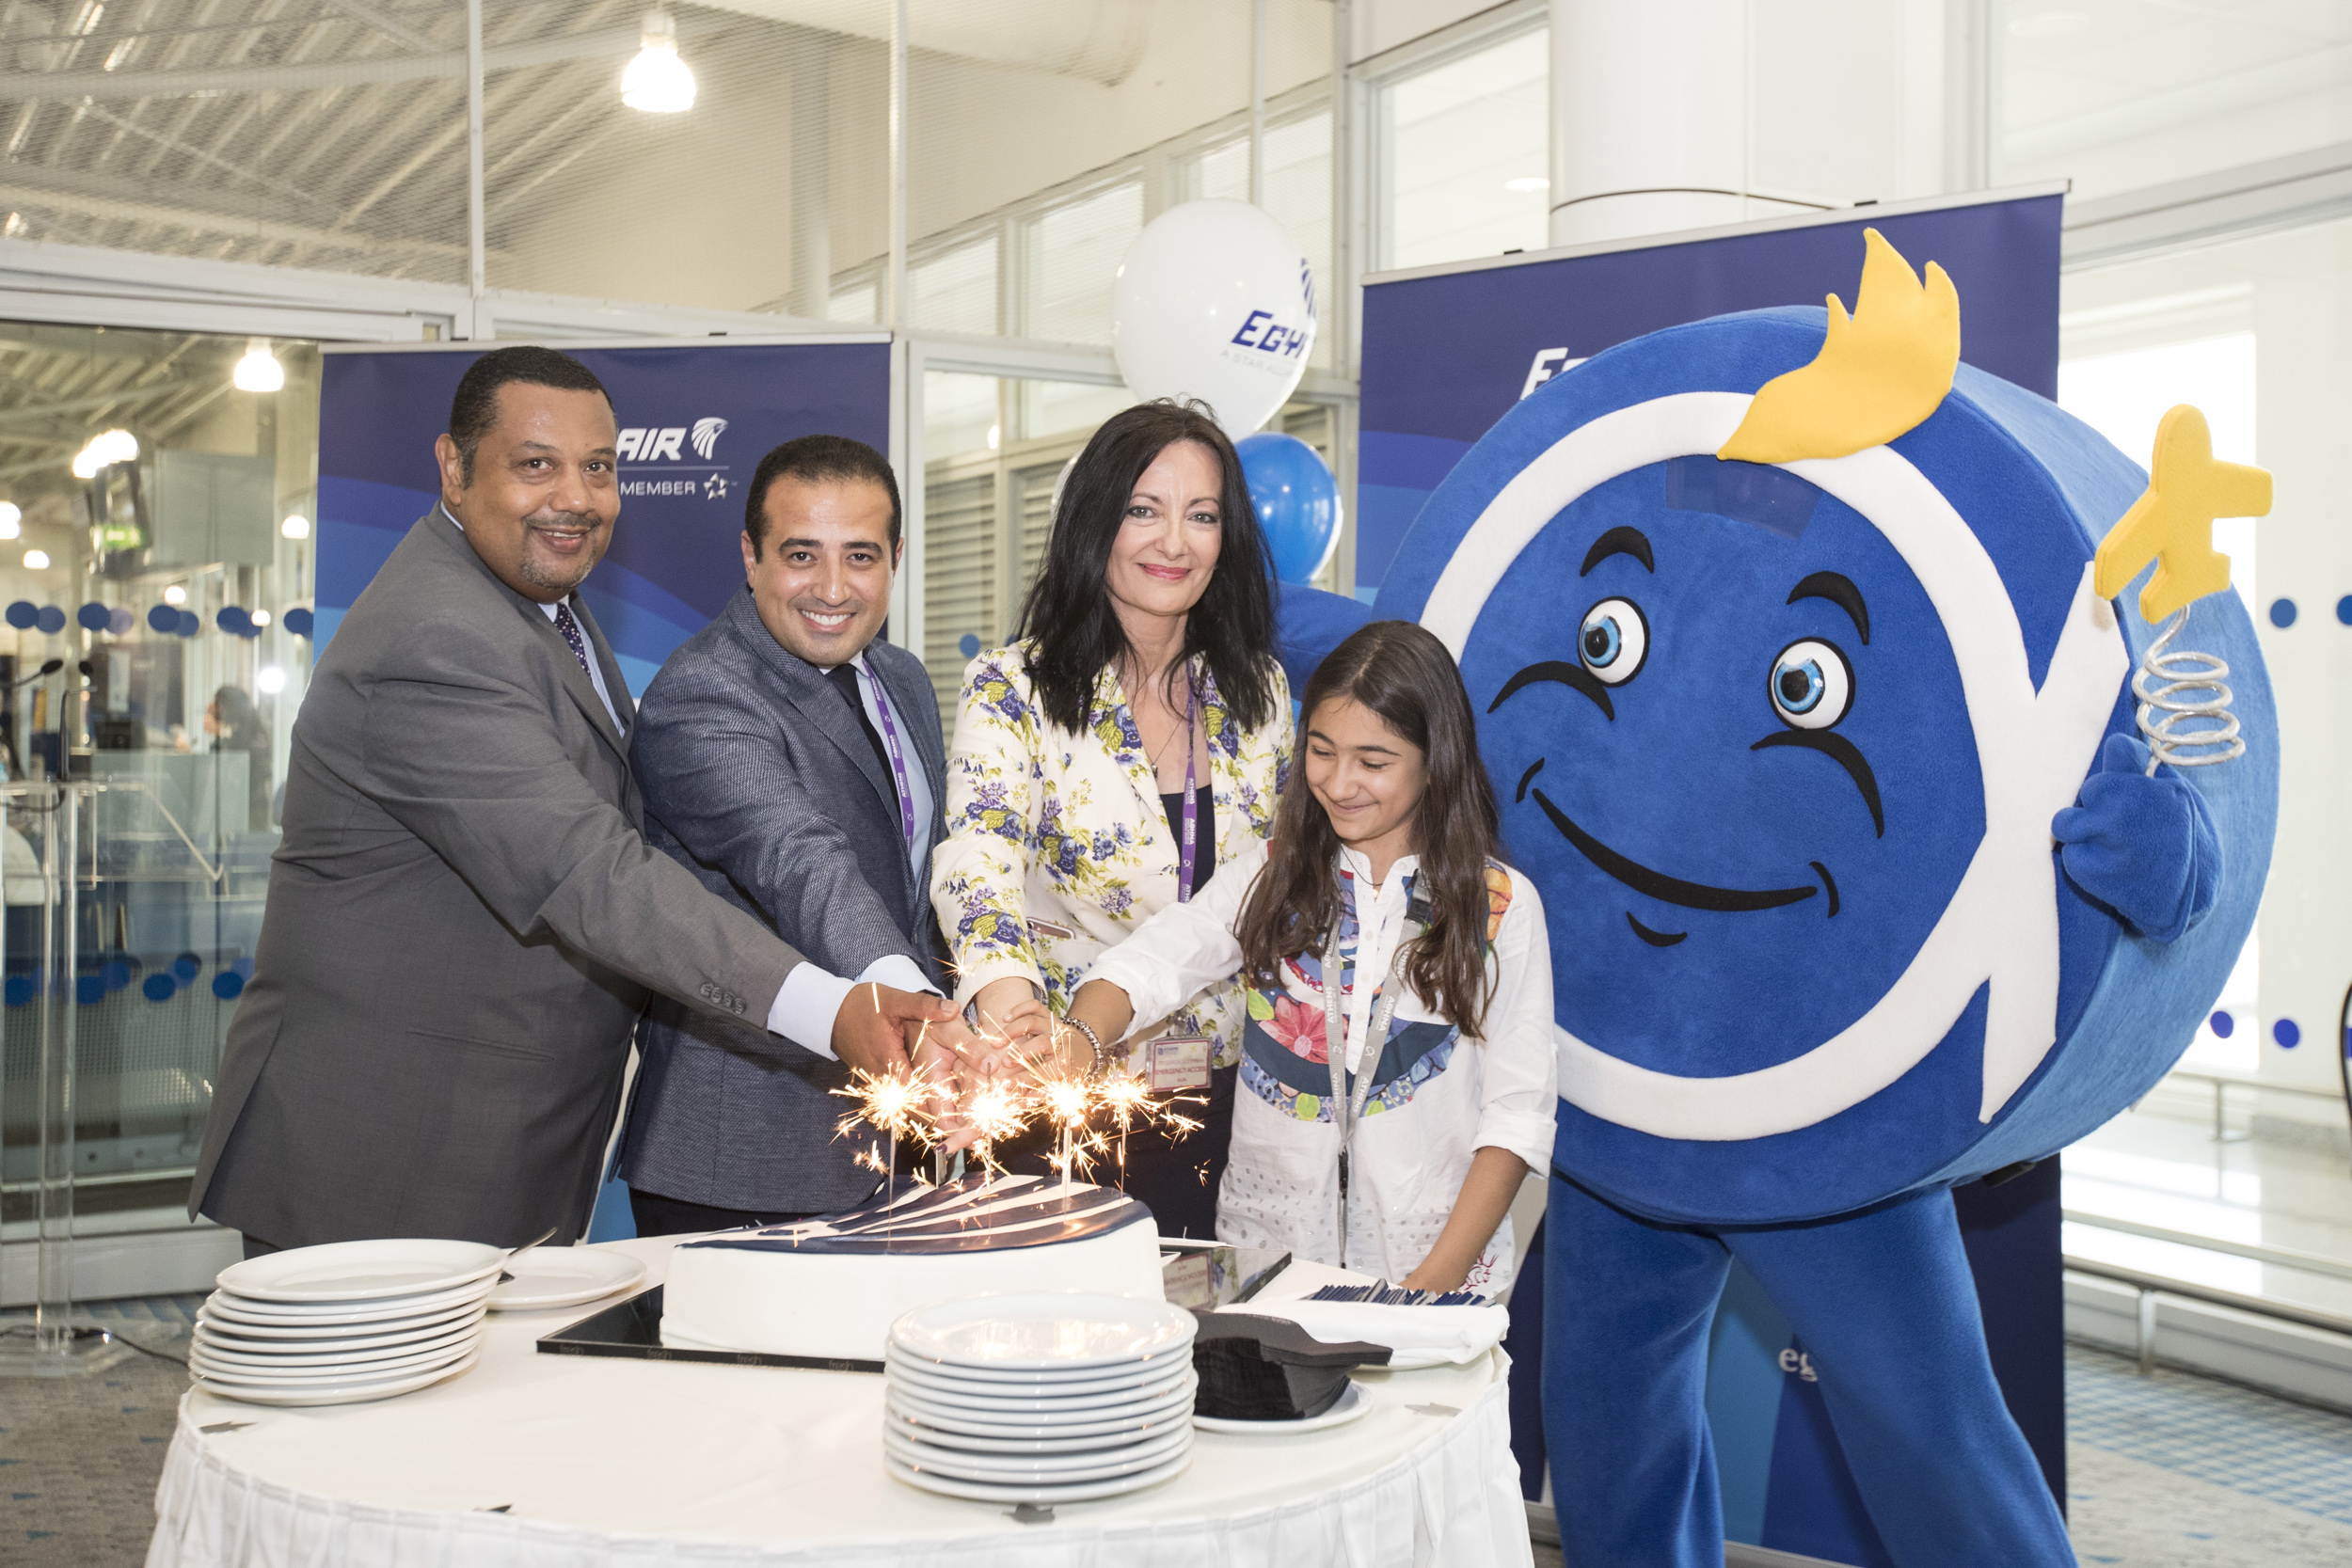 Η Egyptair γιόρτασε σε ειδική εκδήλωση στο Διεθνή Αερολιμένα Αθηνών τα 86 χρόνια από την ίδρυσή της